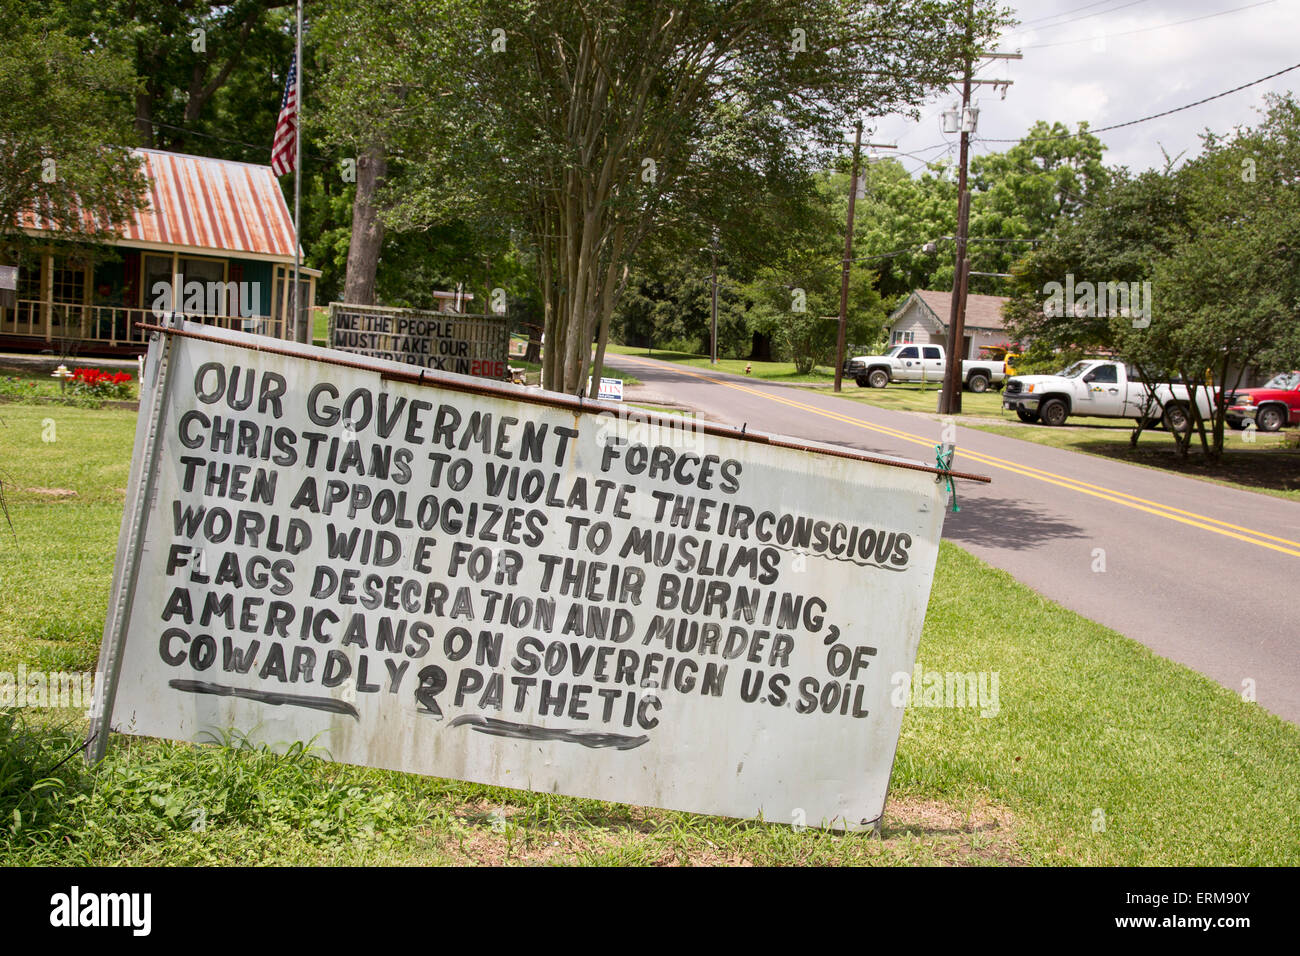 La grosse Tete, Louisiane - un signe le long d'une autoroute de la Louisiane dénonce le gouvernement pour de prétendus actes anti-chrétiens. Banque D'Images